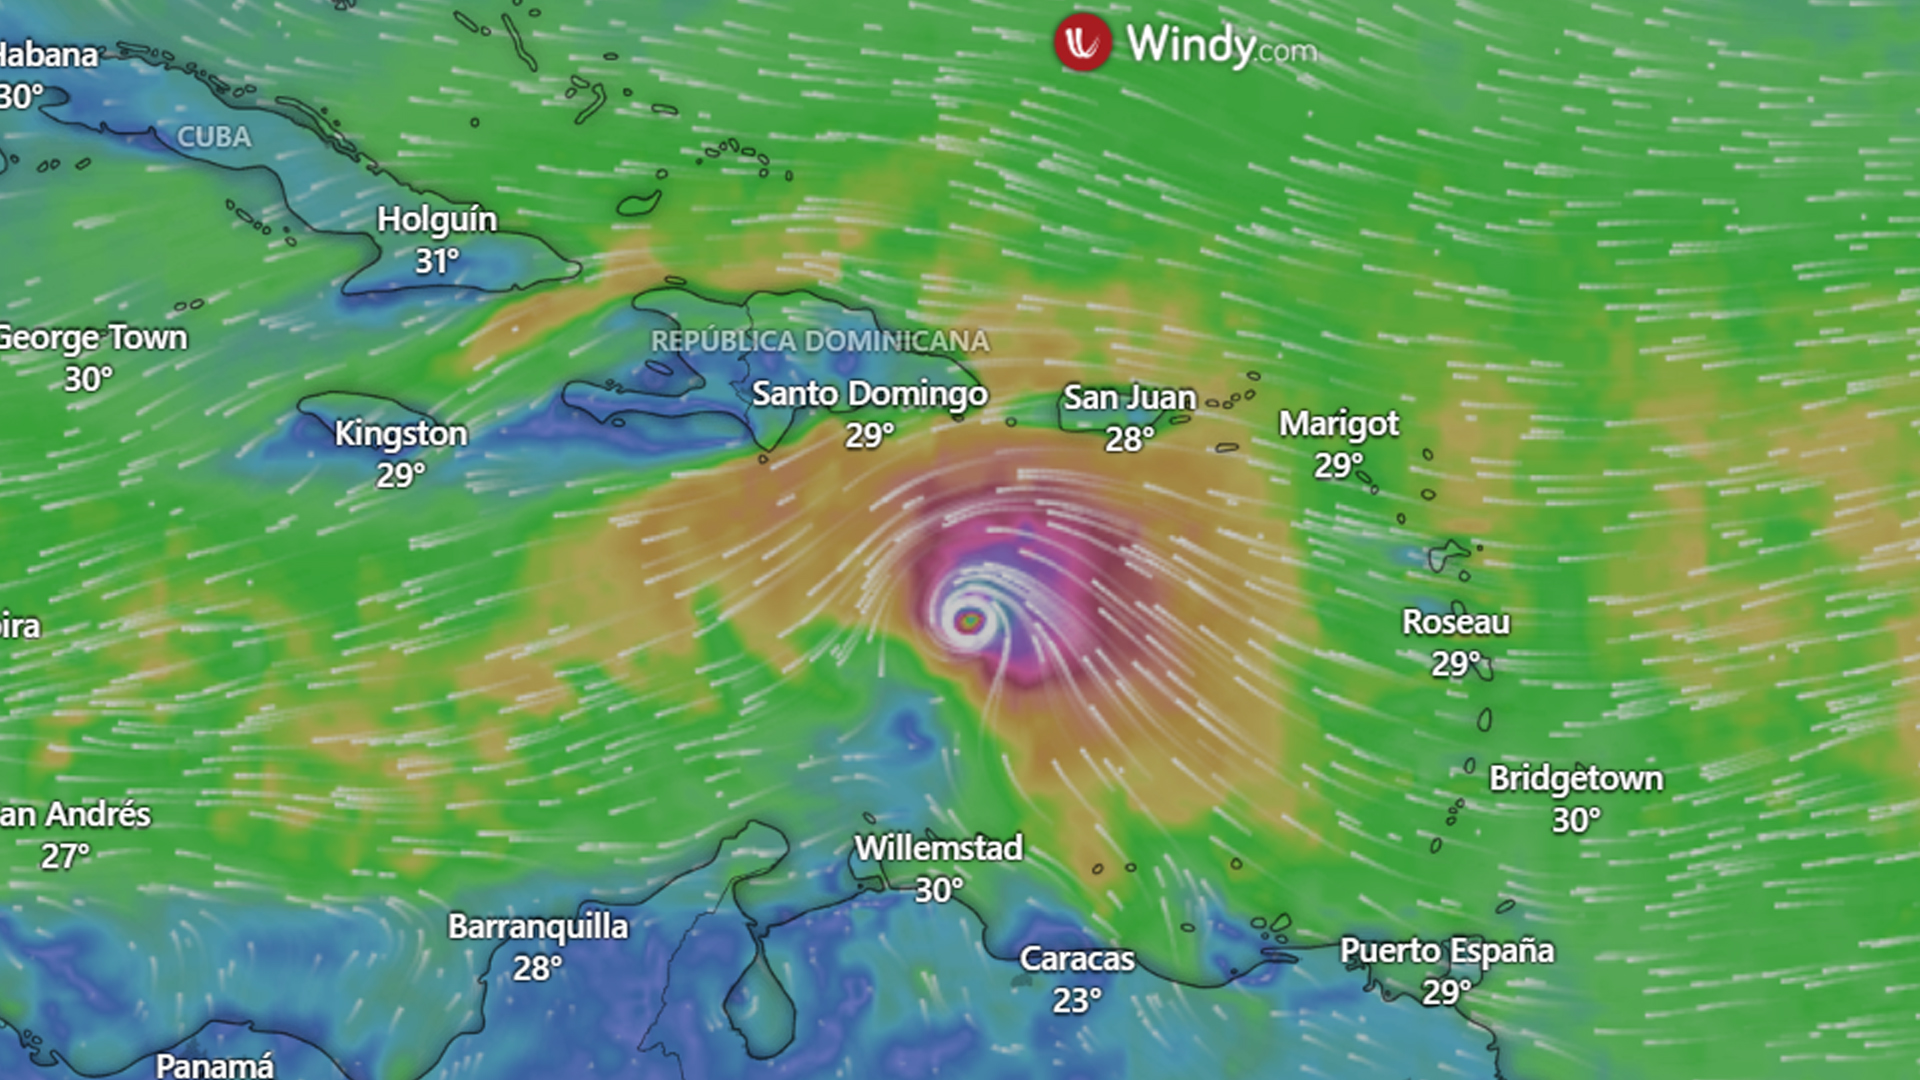 El mapa en tiempo real de por dónde va el huracán a corte de las 10:20 de la mañana de este 2 de julio